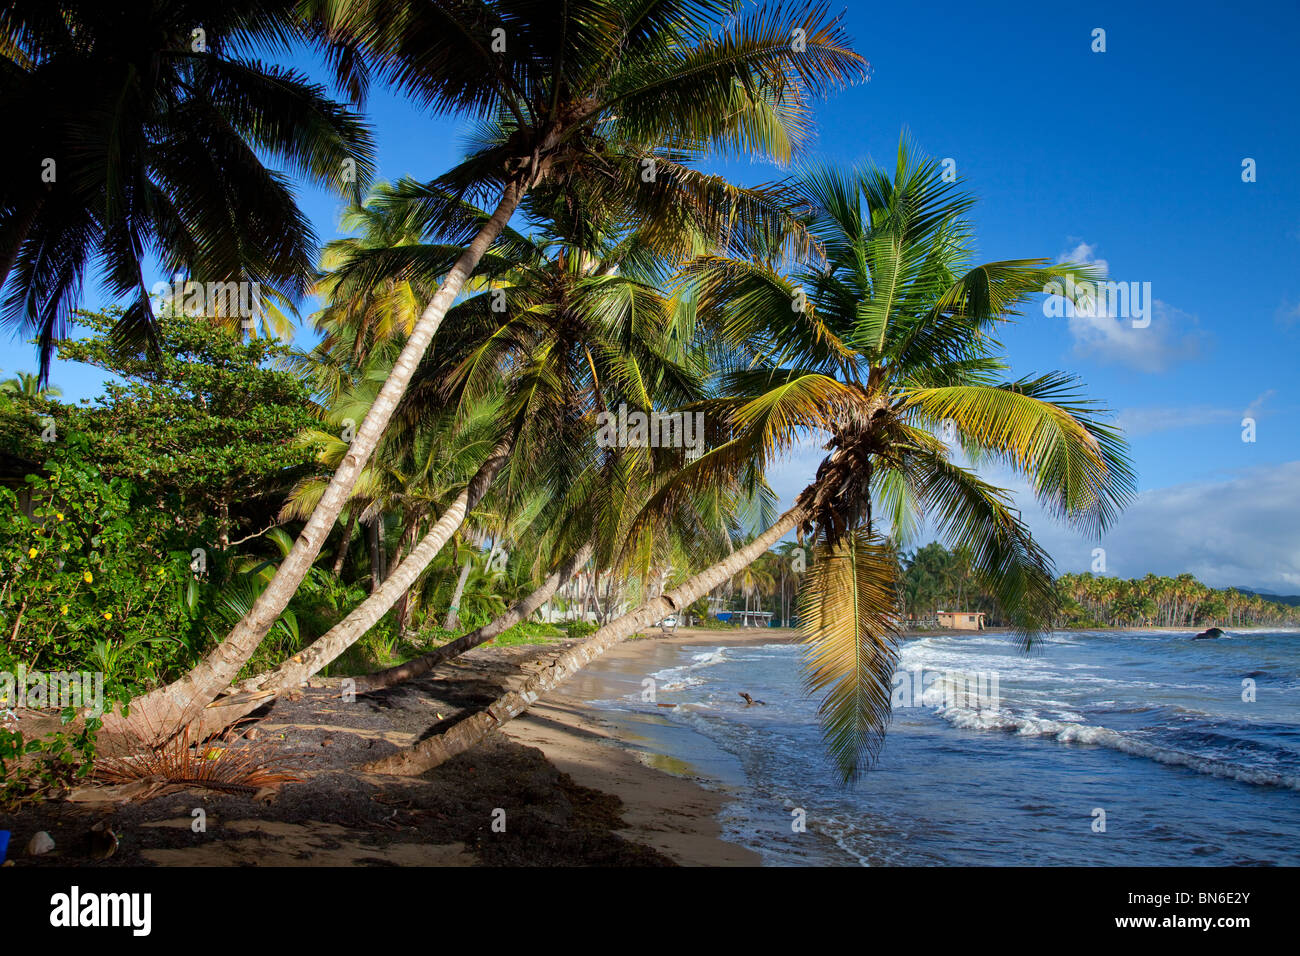 Palmiers tropicaux surplombant la plage près de Yabucoa, Puerto Rico, Antilles. Banque D'Images